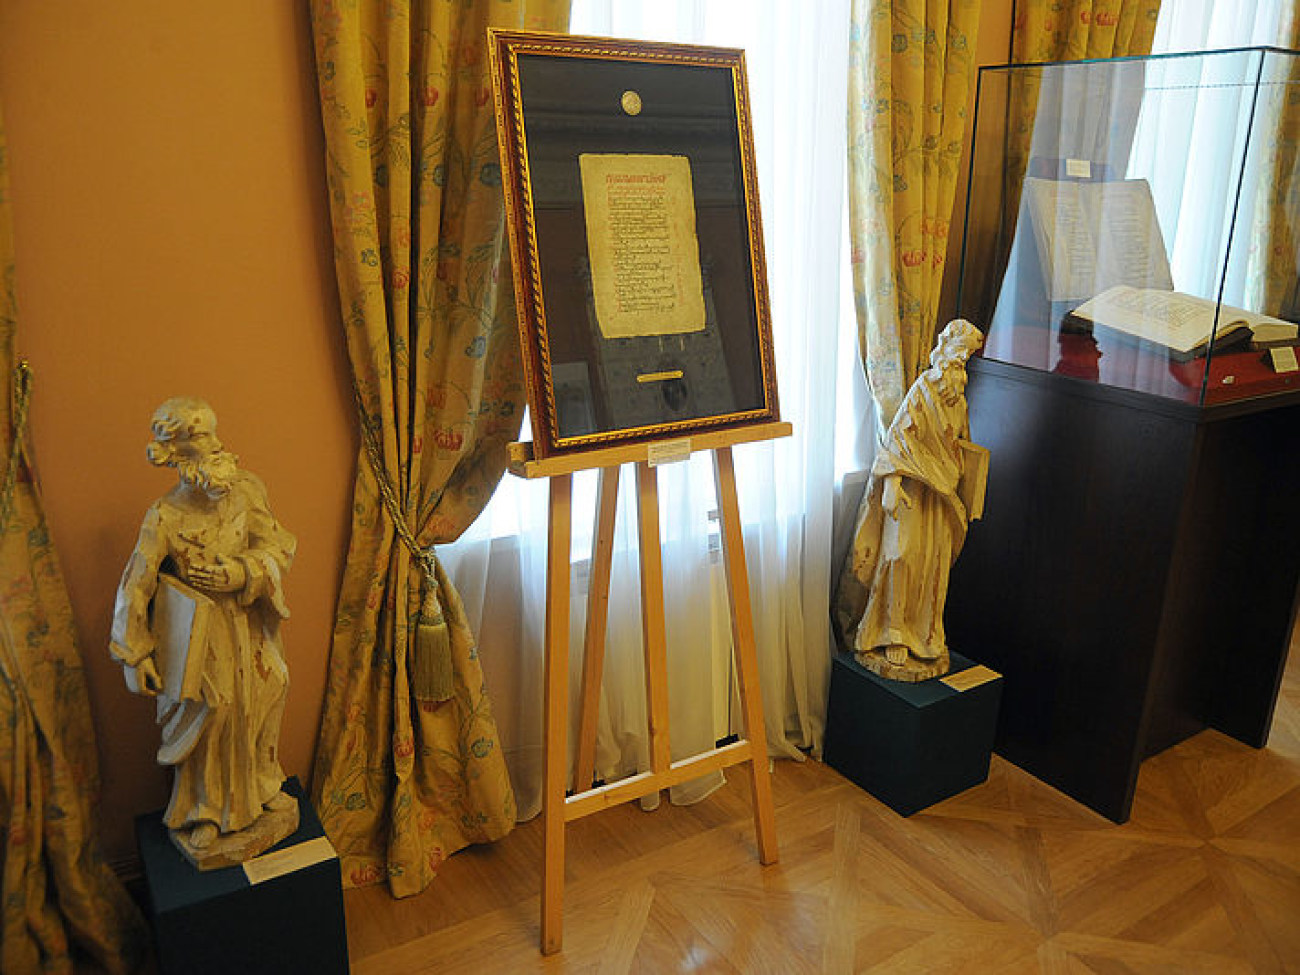 В Киеве выставлены аутентичные копии листов Луцкого и Пересопницкого Евангелия, 25 мая 2015 г.